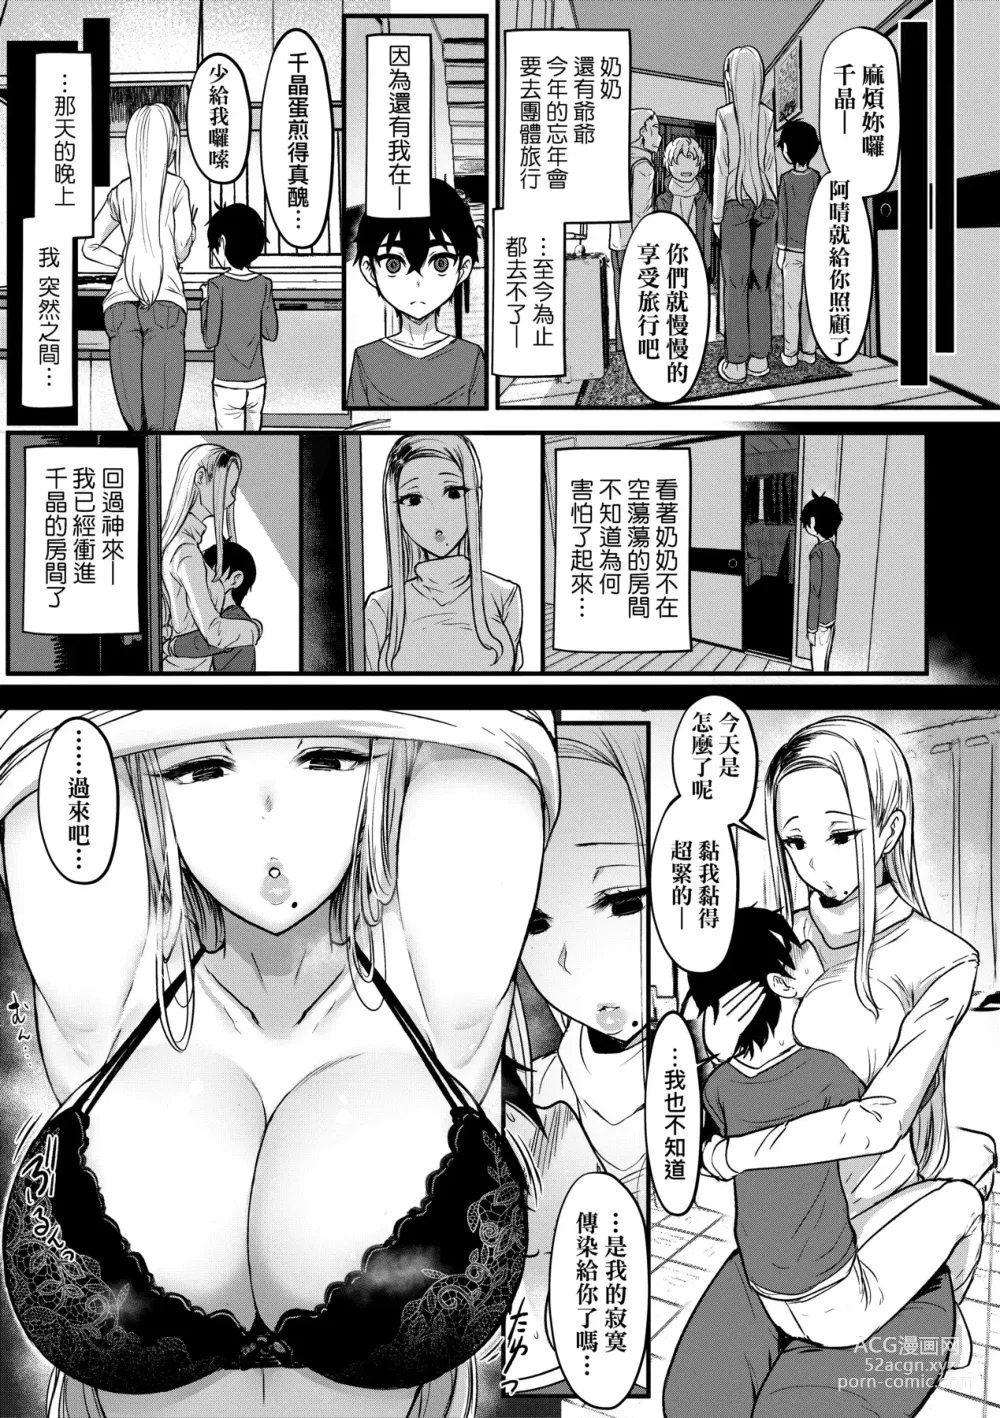 Page 284 of doujinshi Iikedo, Naysyone. (decensored)